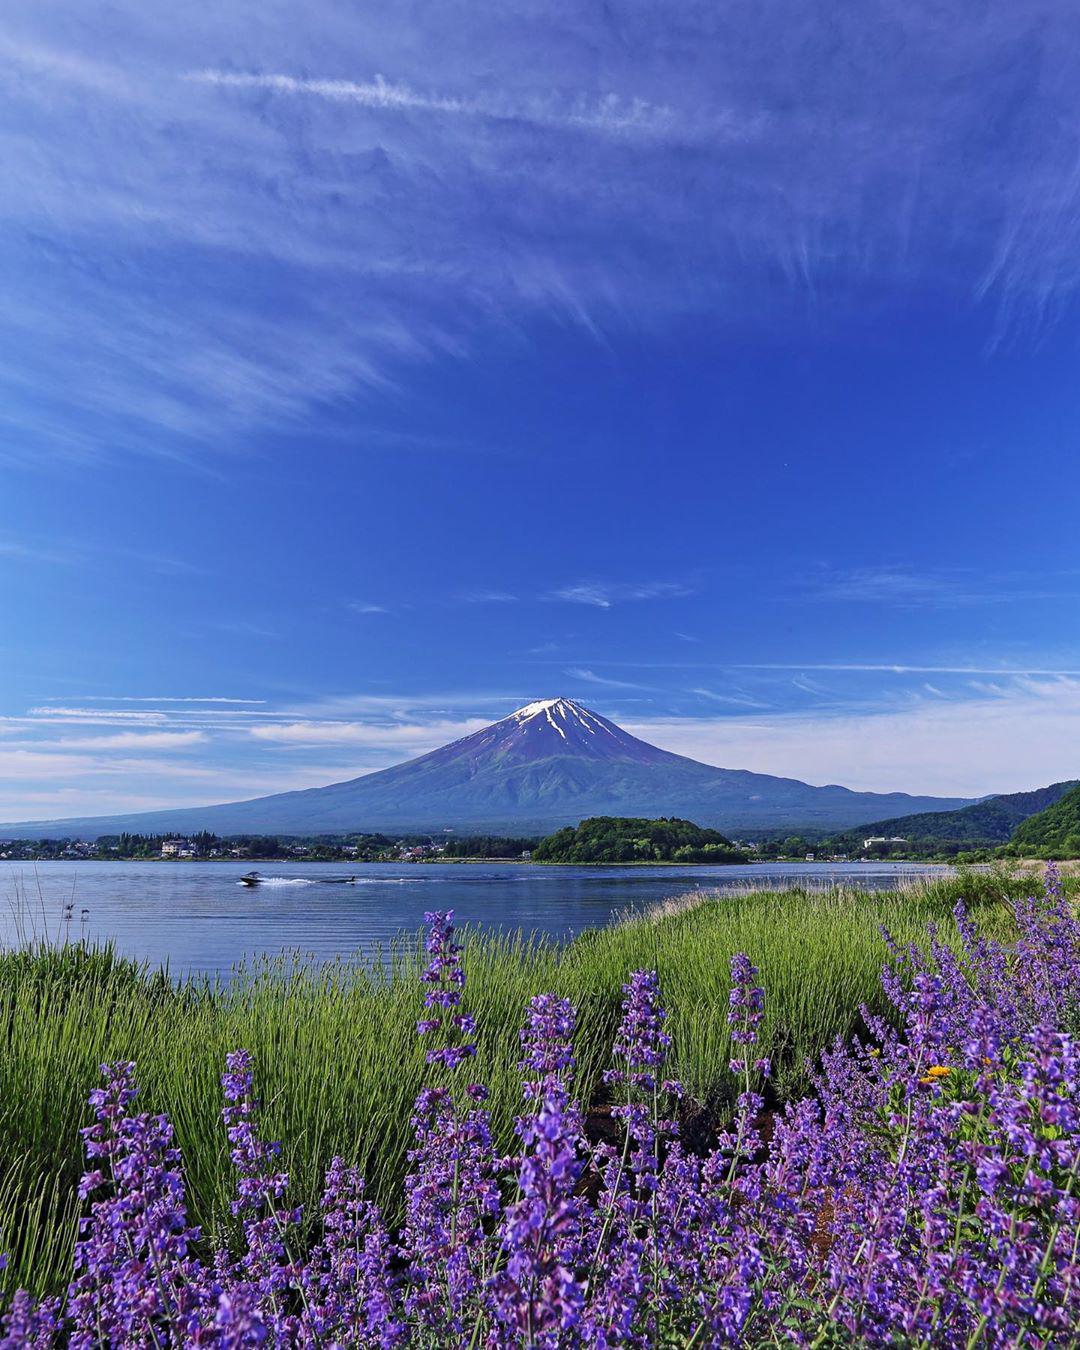 薰衣草的海洋——日本•大石公园  【被安利的心情】  本人是个喜欢拍照的小可爱一枚，因为放假了想找个